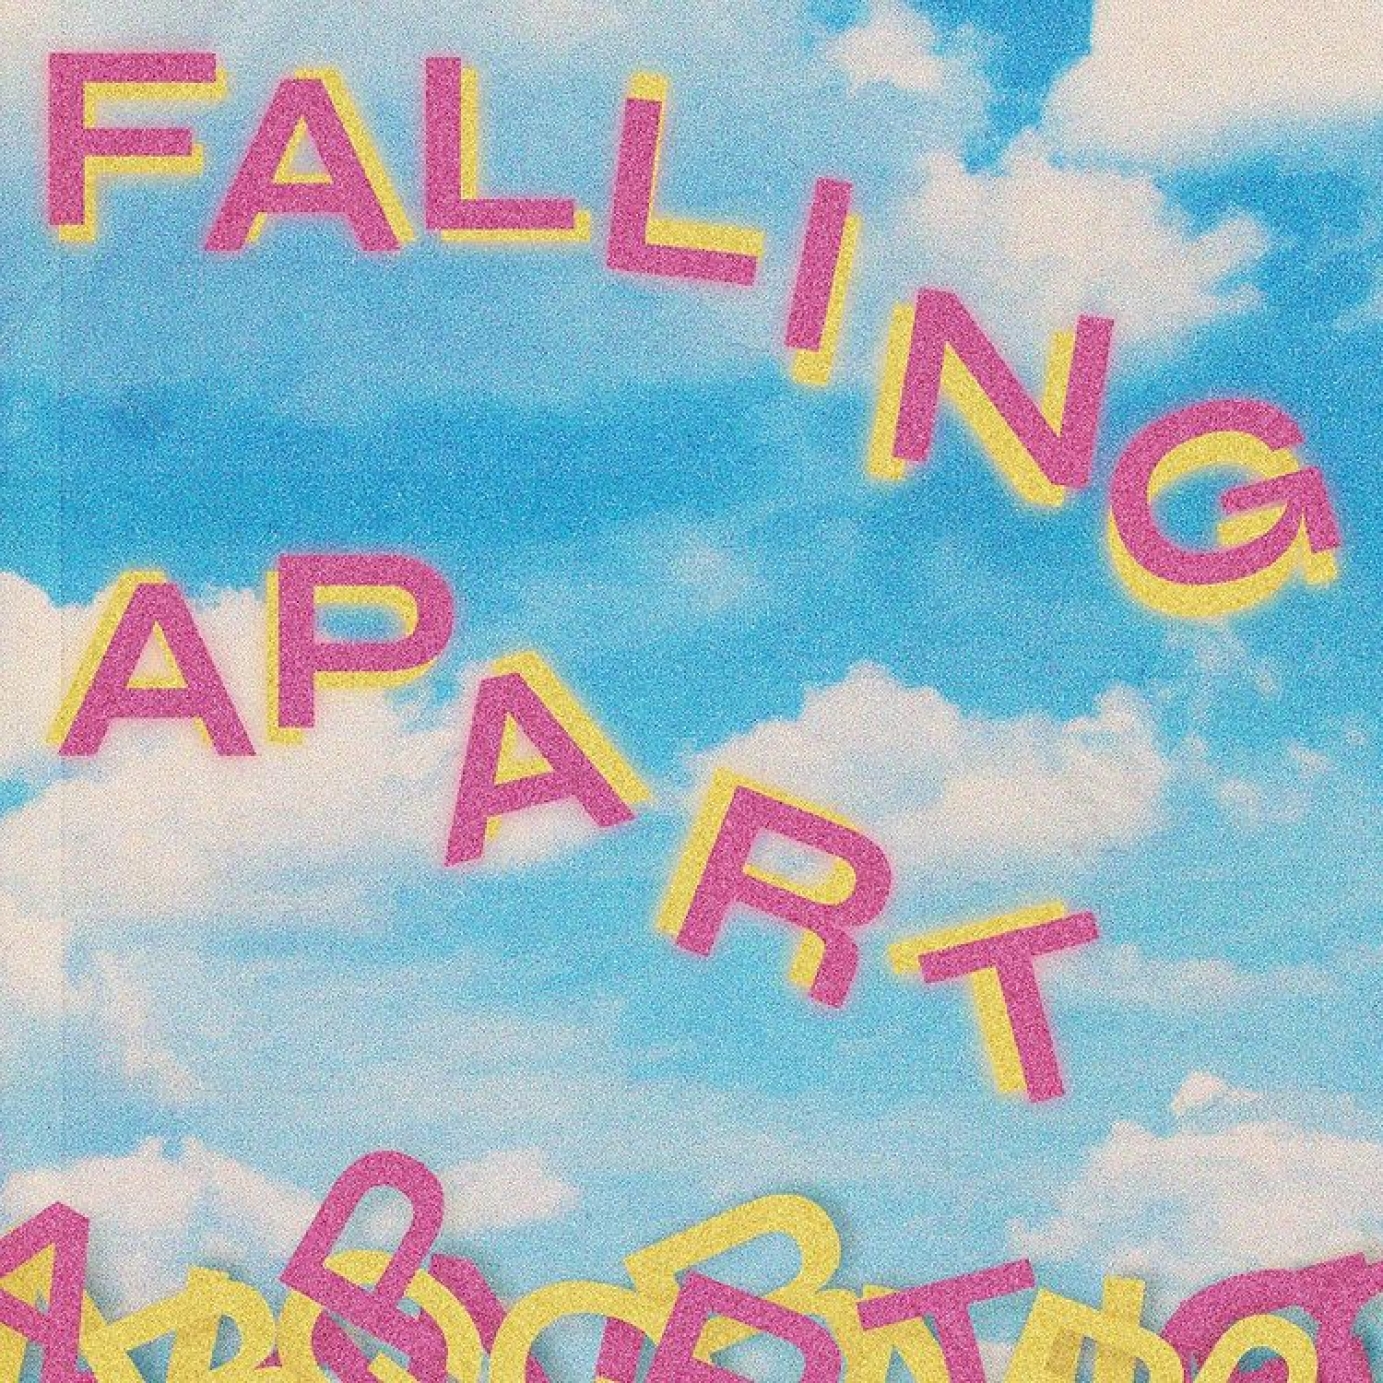 Falling Apart Artwork